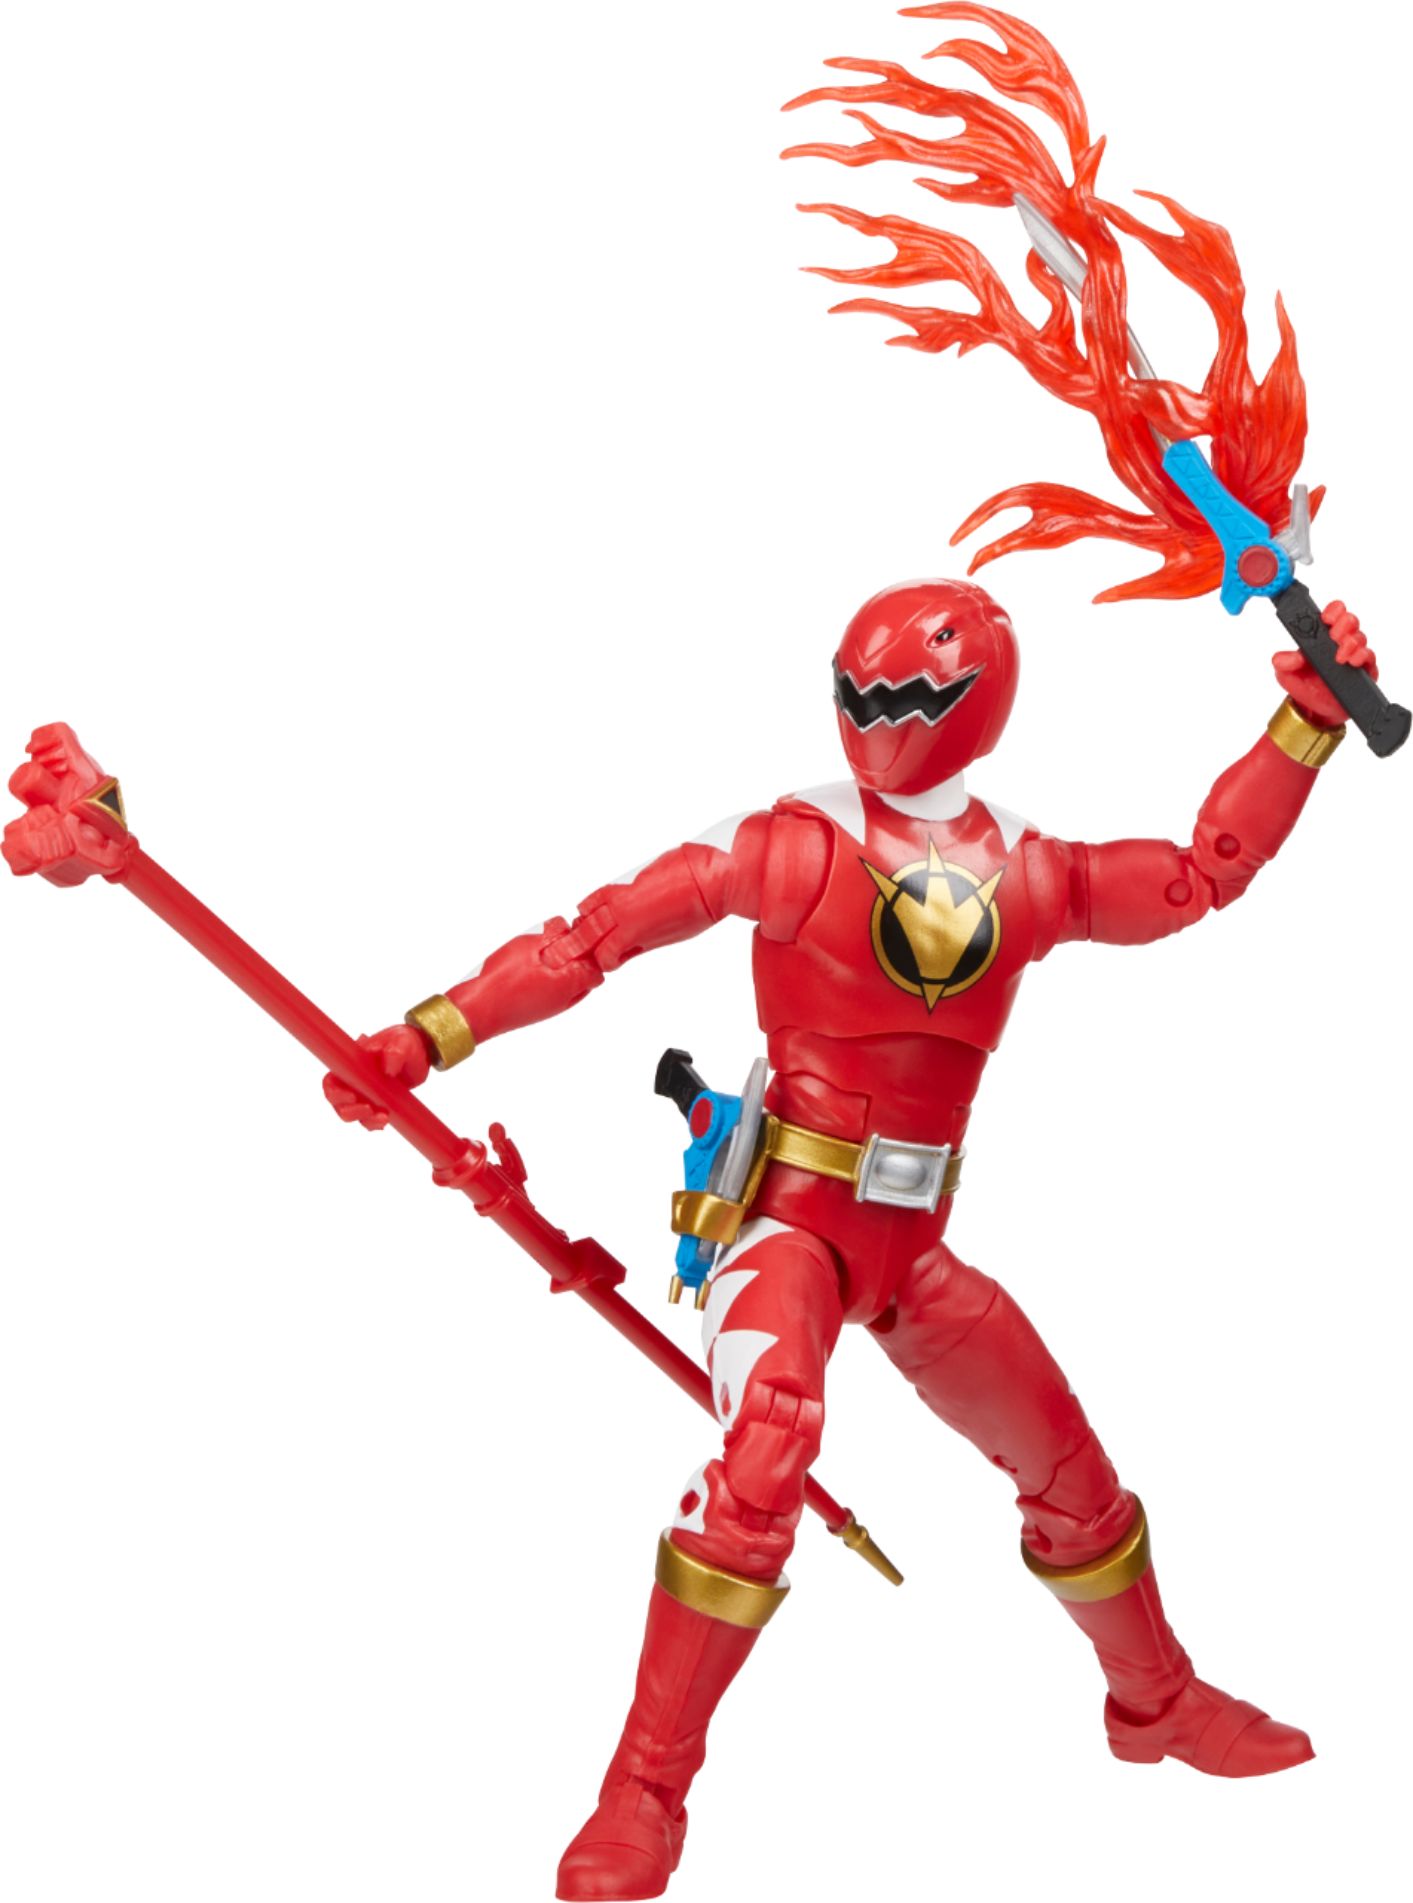 Power Rangers - Lightning Collection Dino Thunder Red Ranger Figure